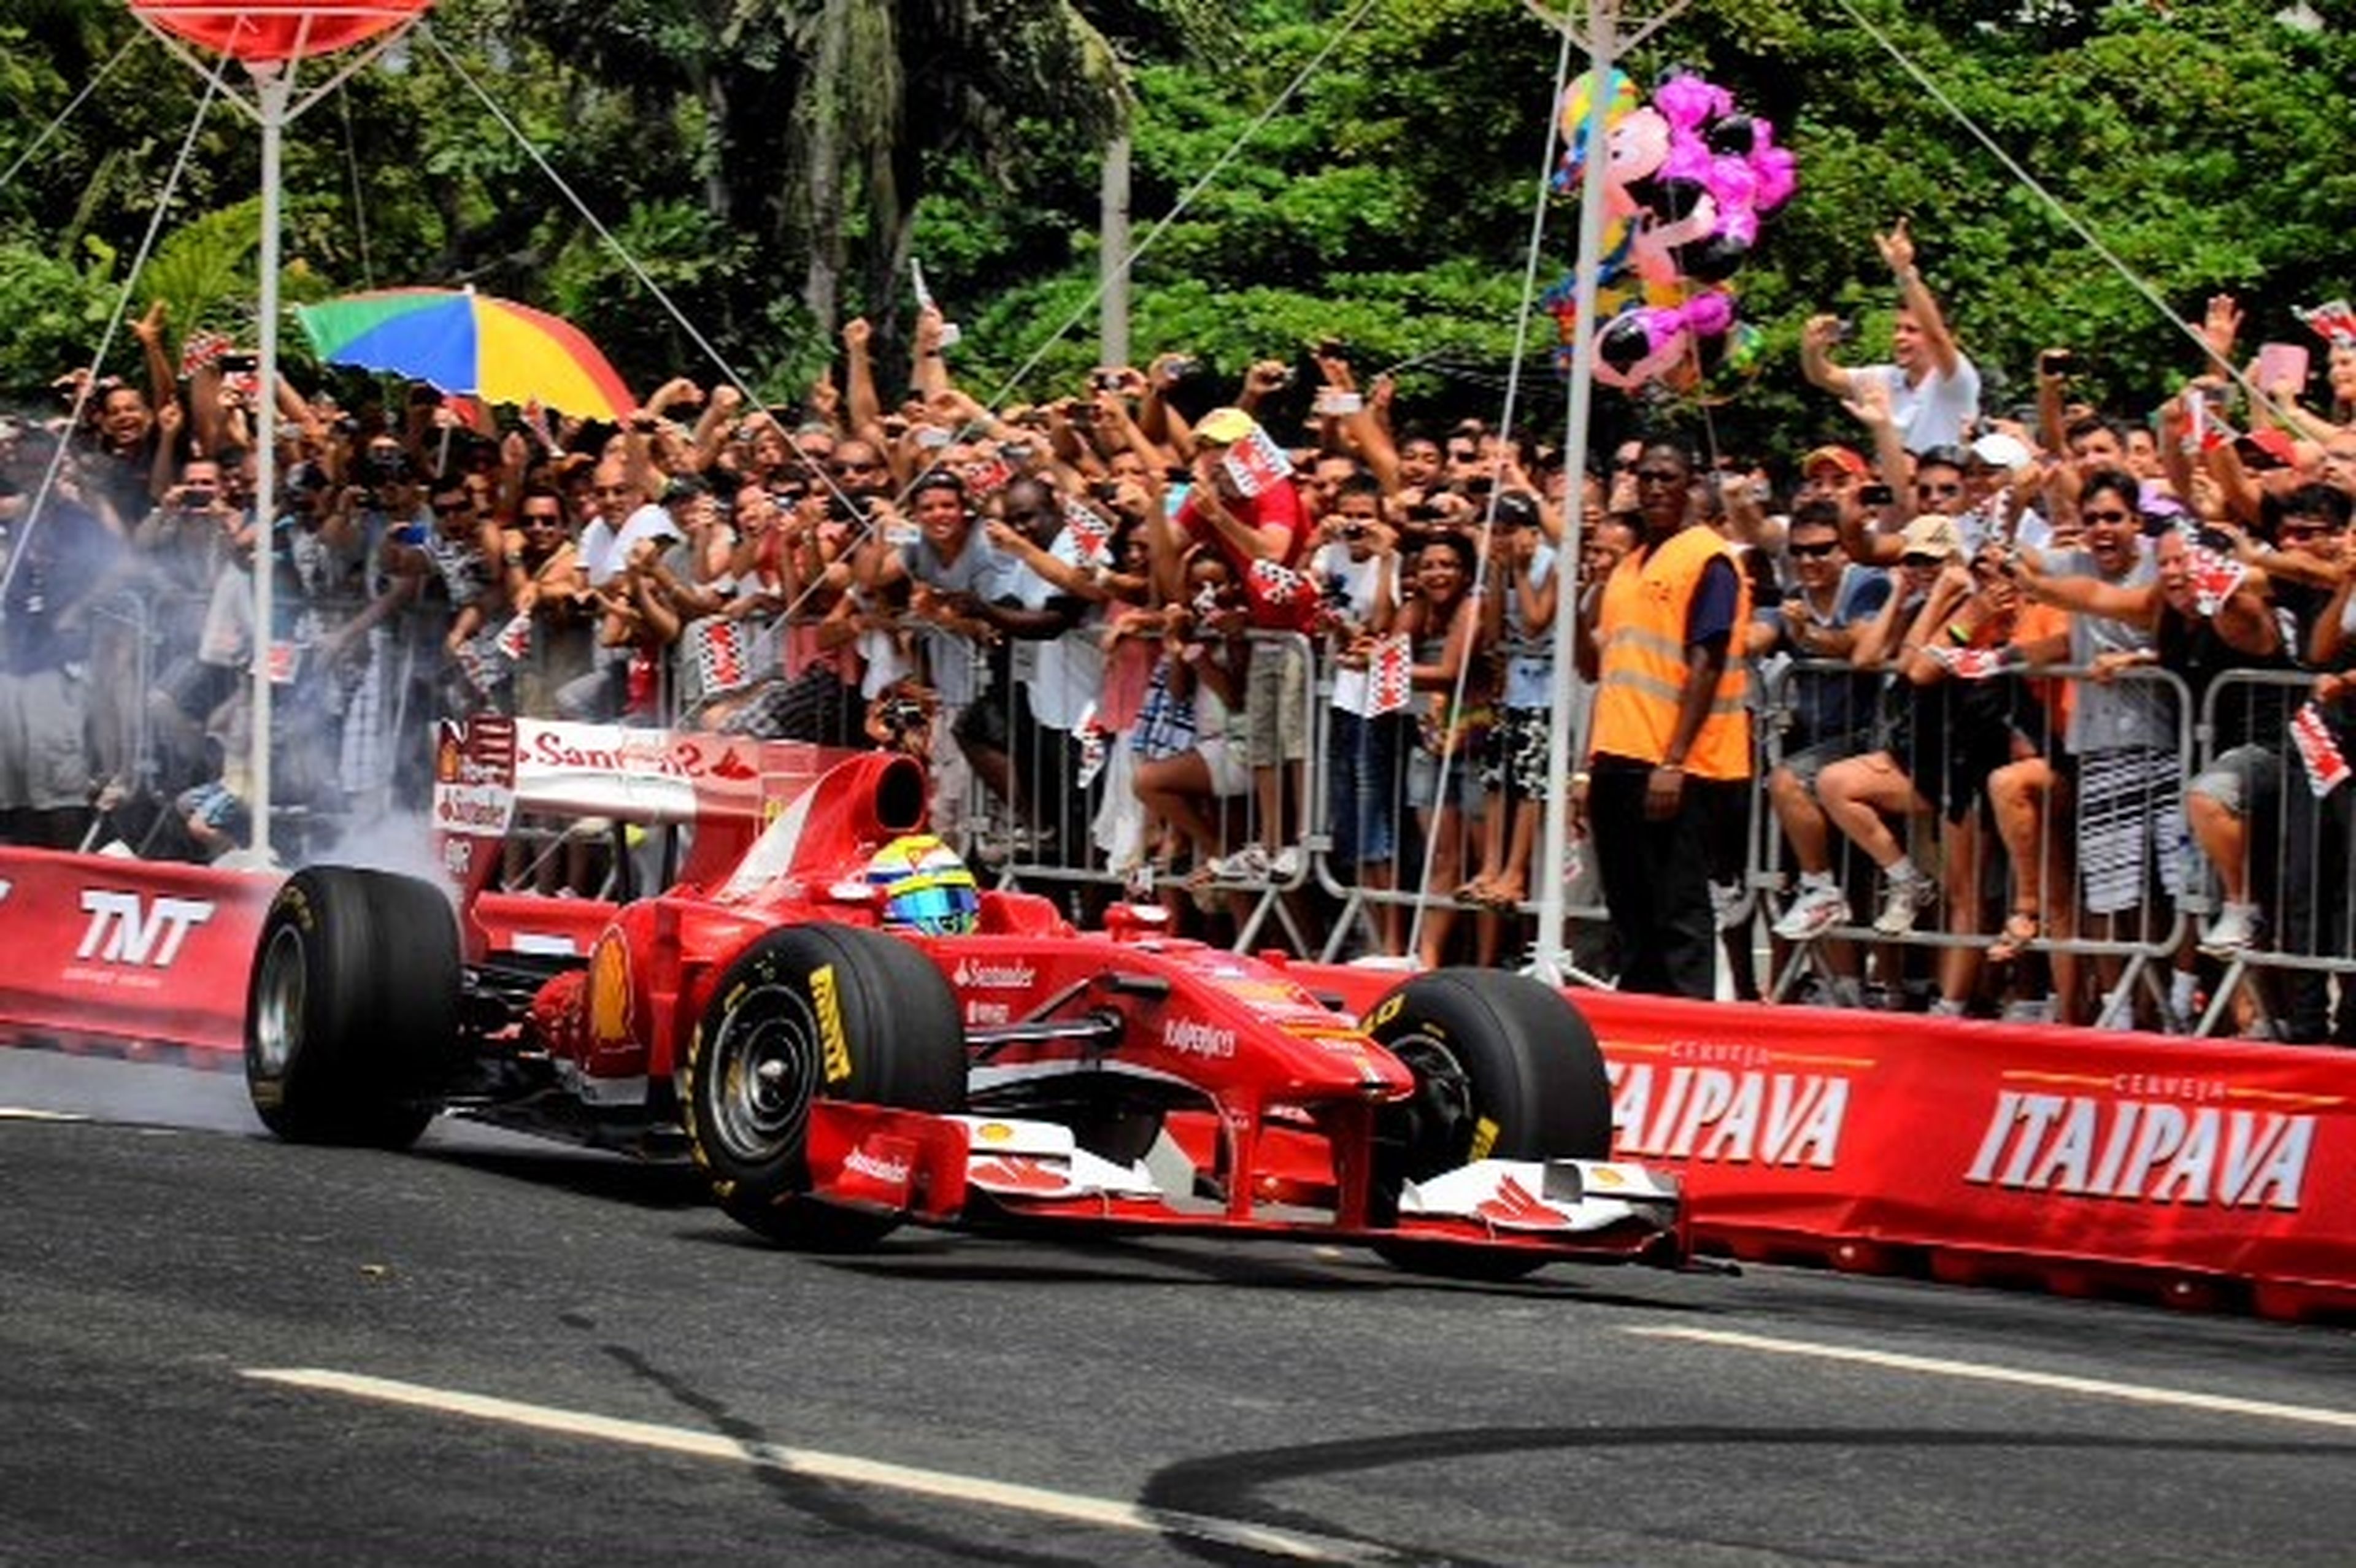 La exhibición de Ferrari en Brasil deja dos heridos